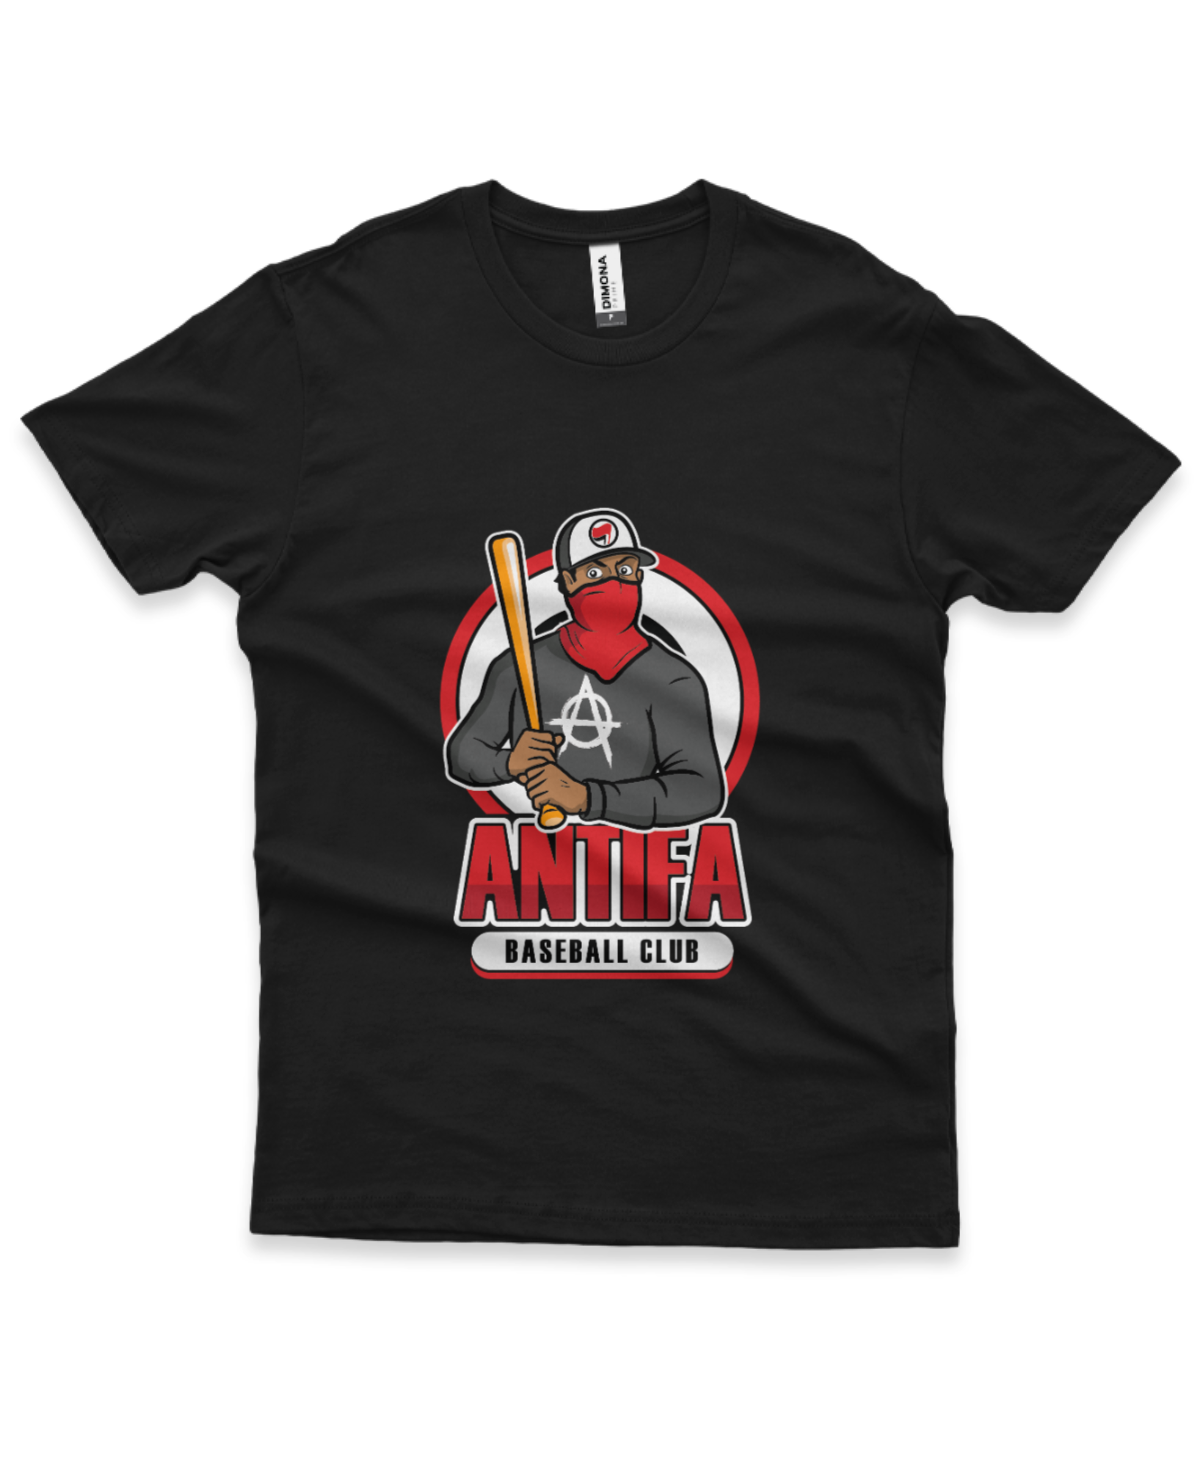 camiseta masculina cor preta com ilustração de homem mascarado e frase antifa baseball club